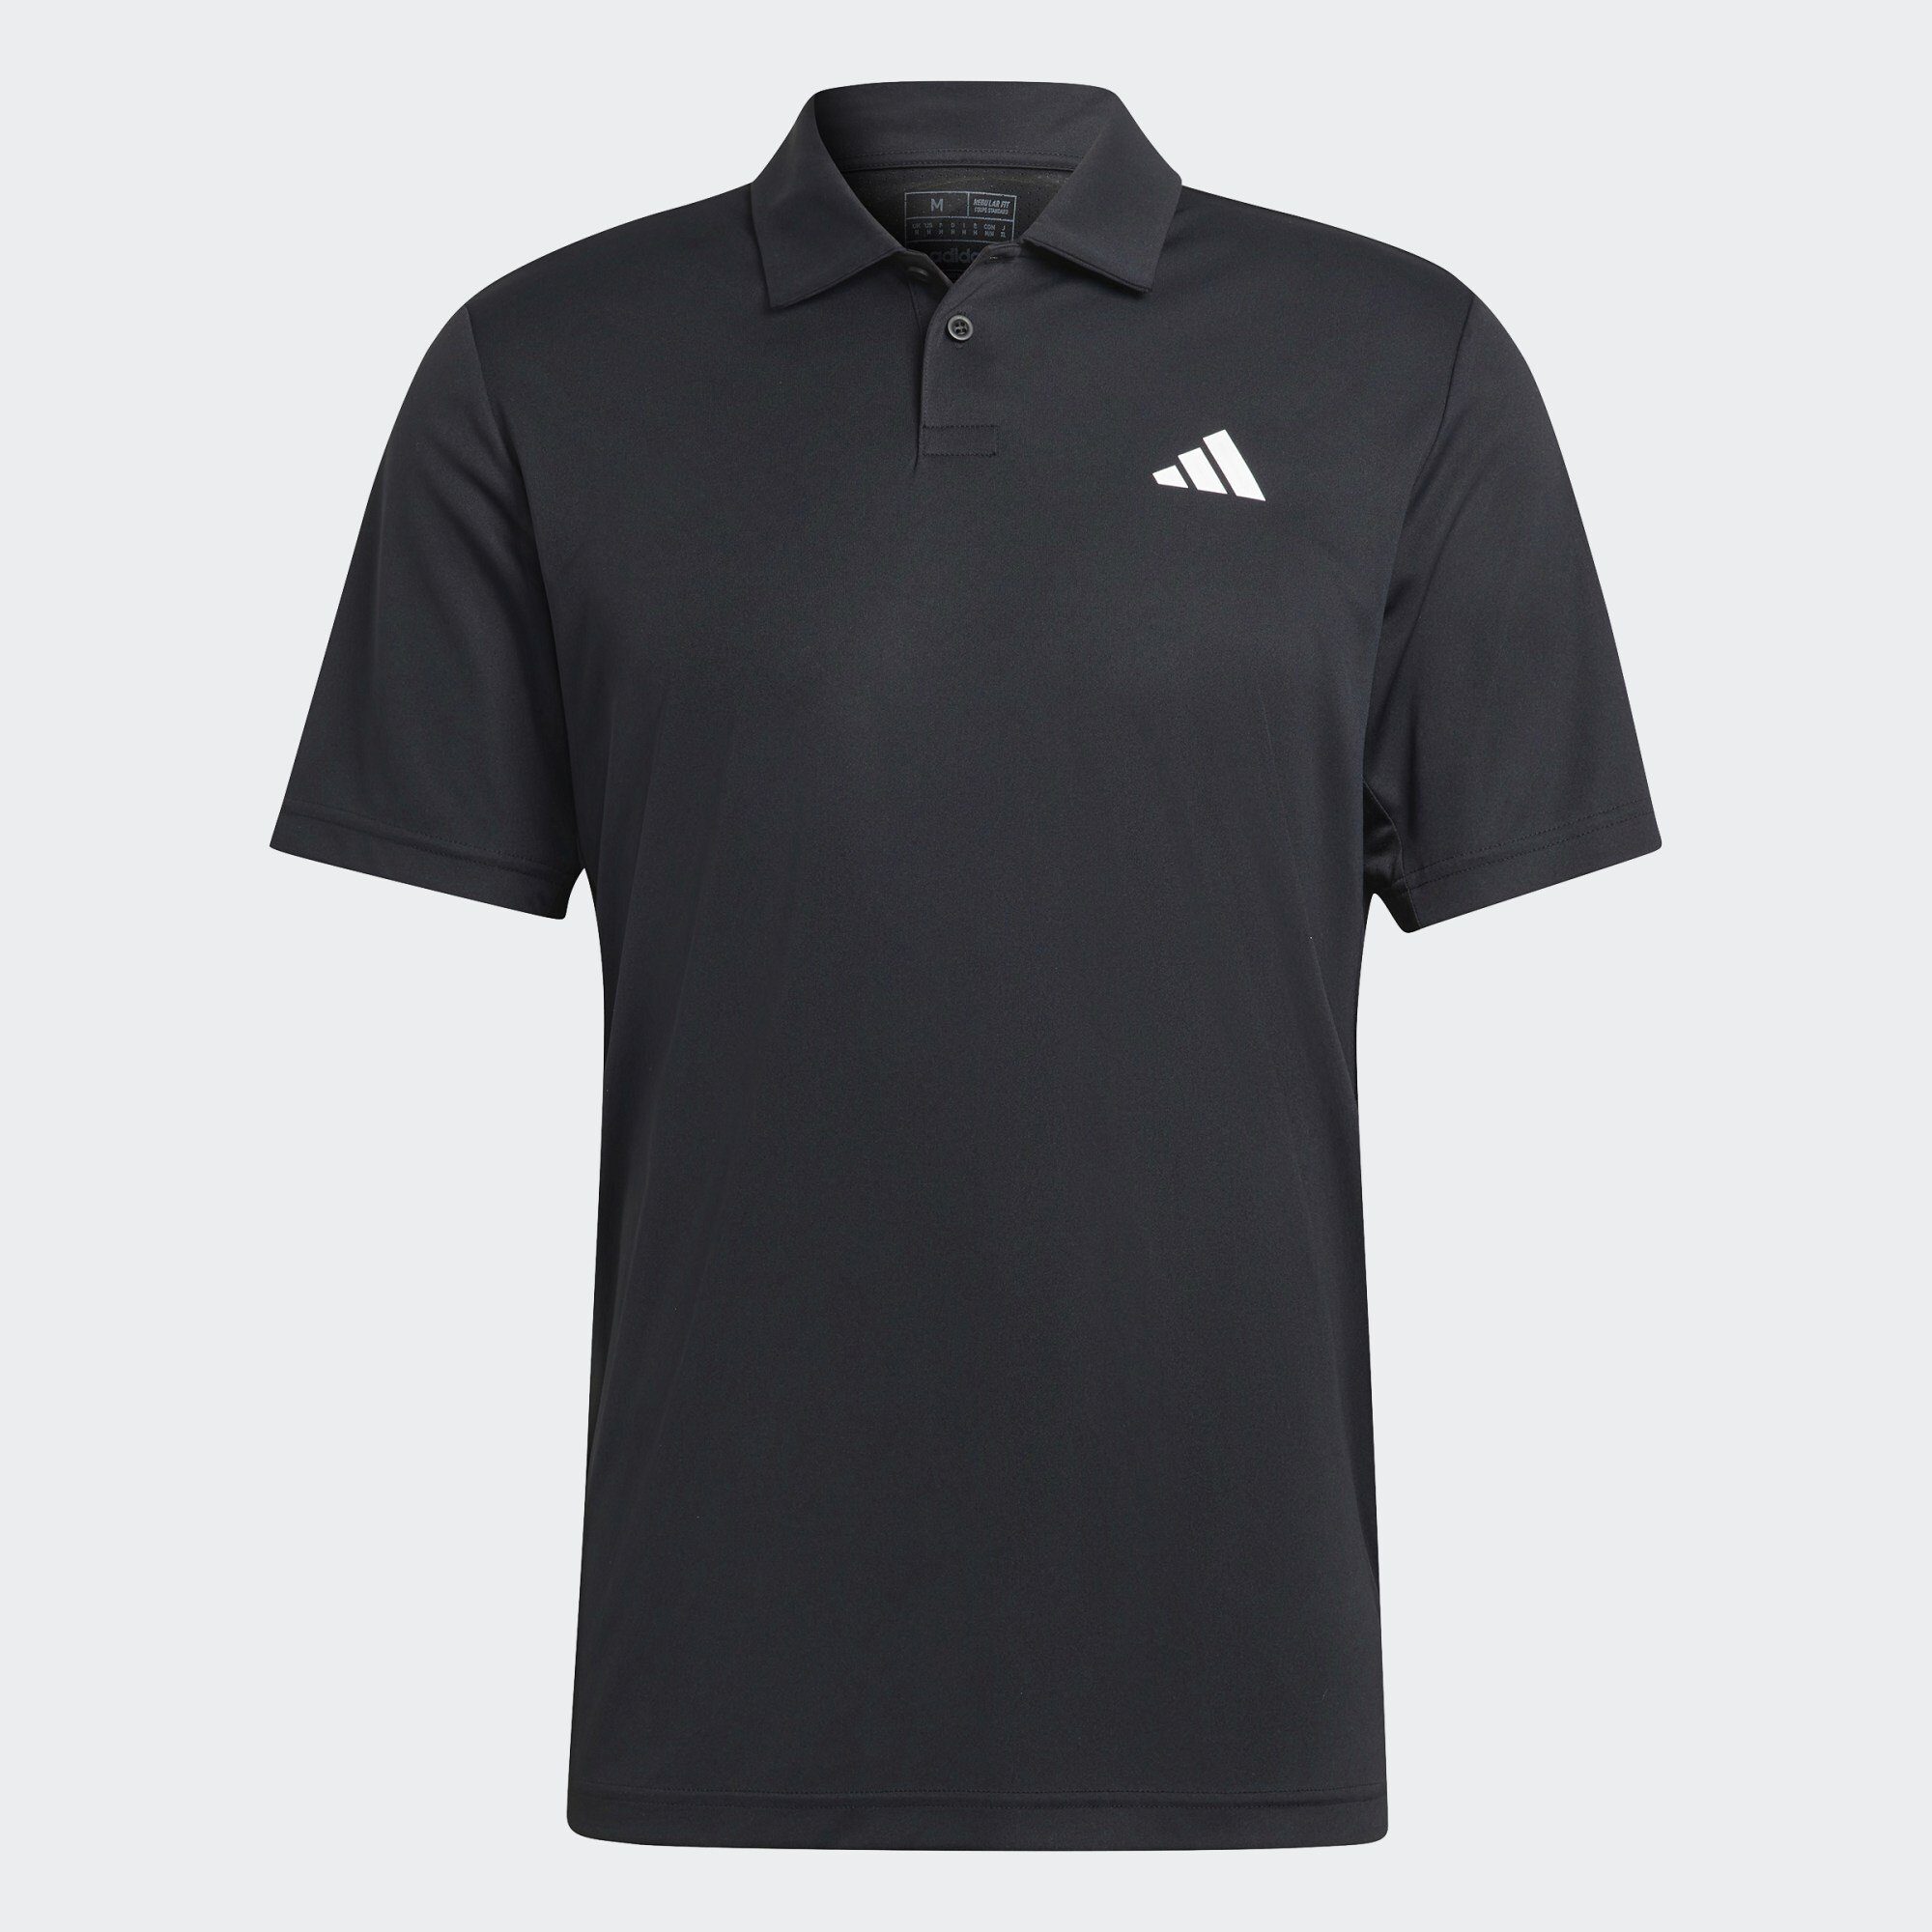 Black Funktionsshirt POLOSHIRT TENNIS adidas Performance CLUB